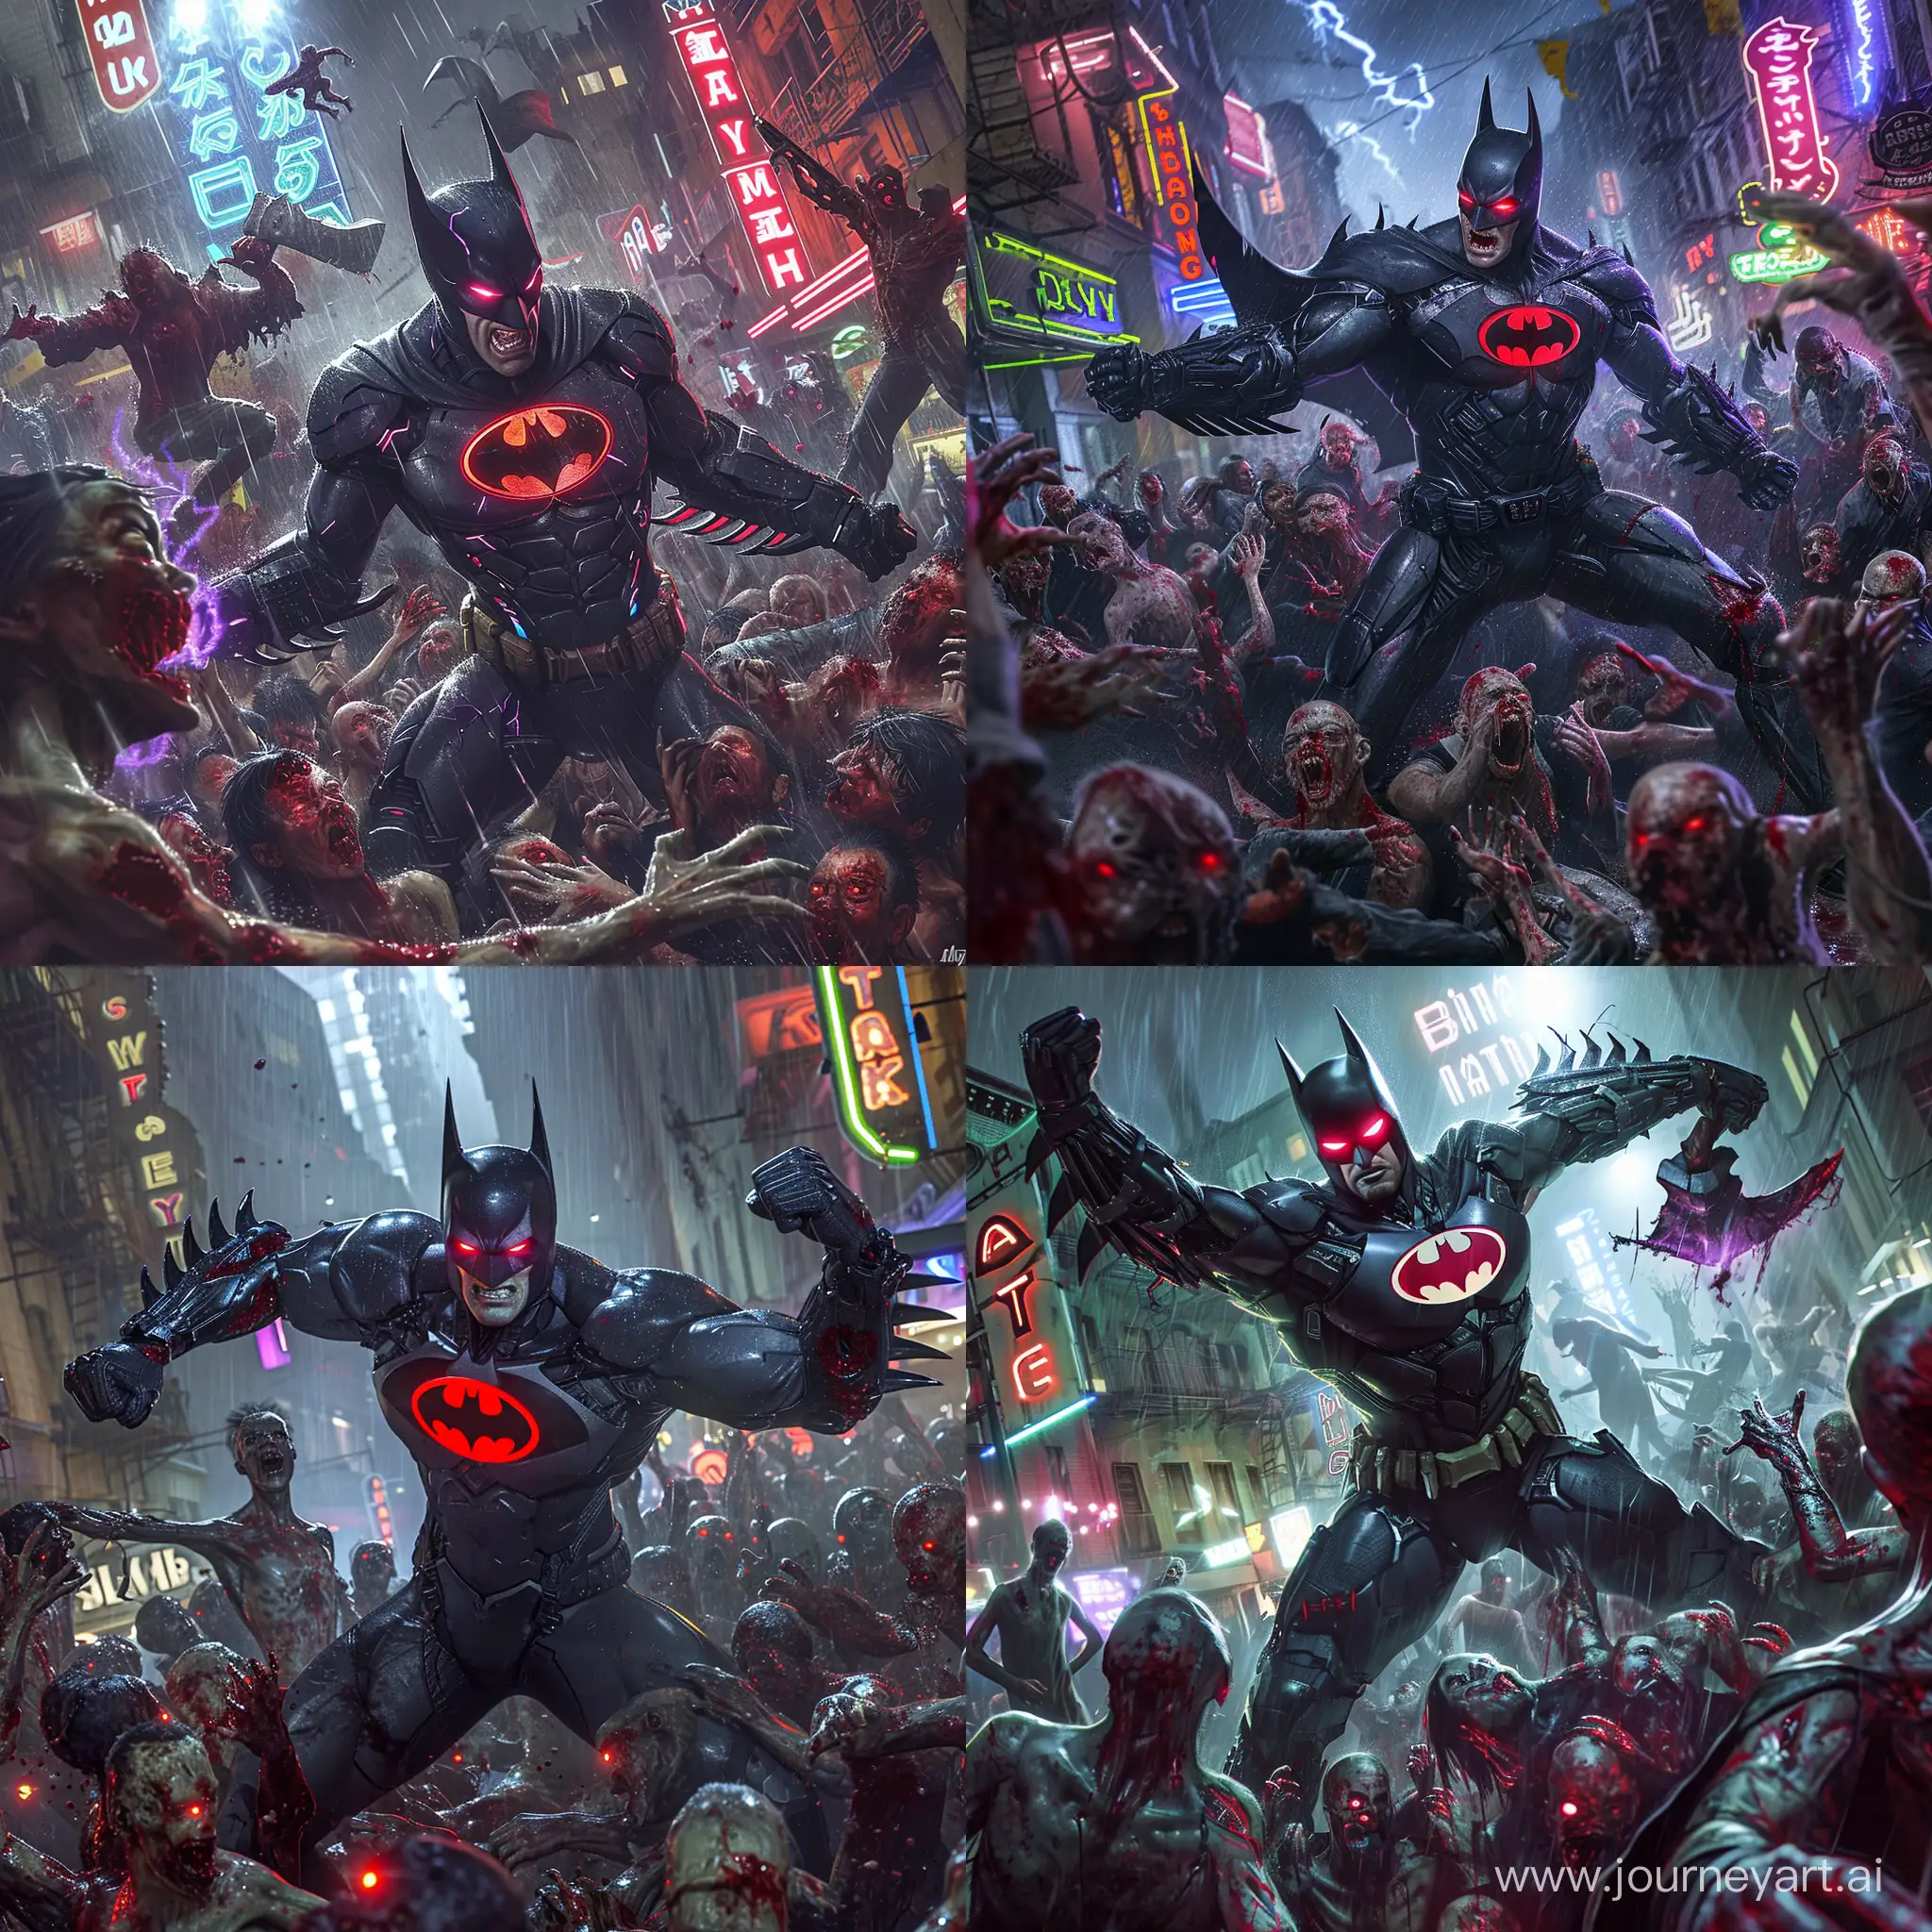 Intense-Batman-Beyond-Battle-Cybernetic-Survival-Against-Monstrous-Zombies